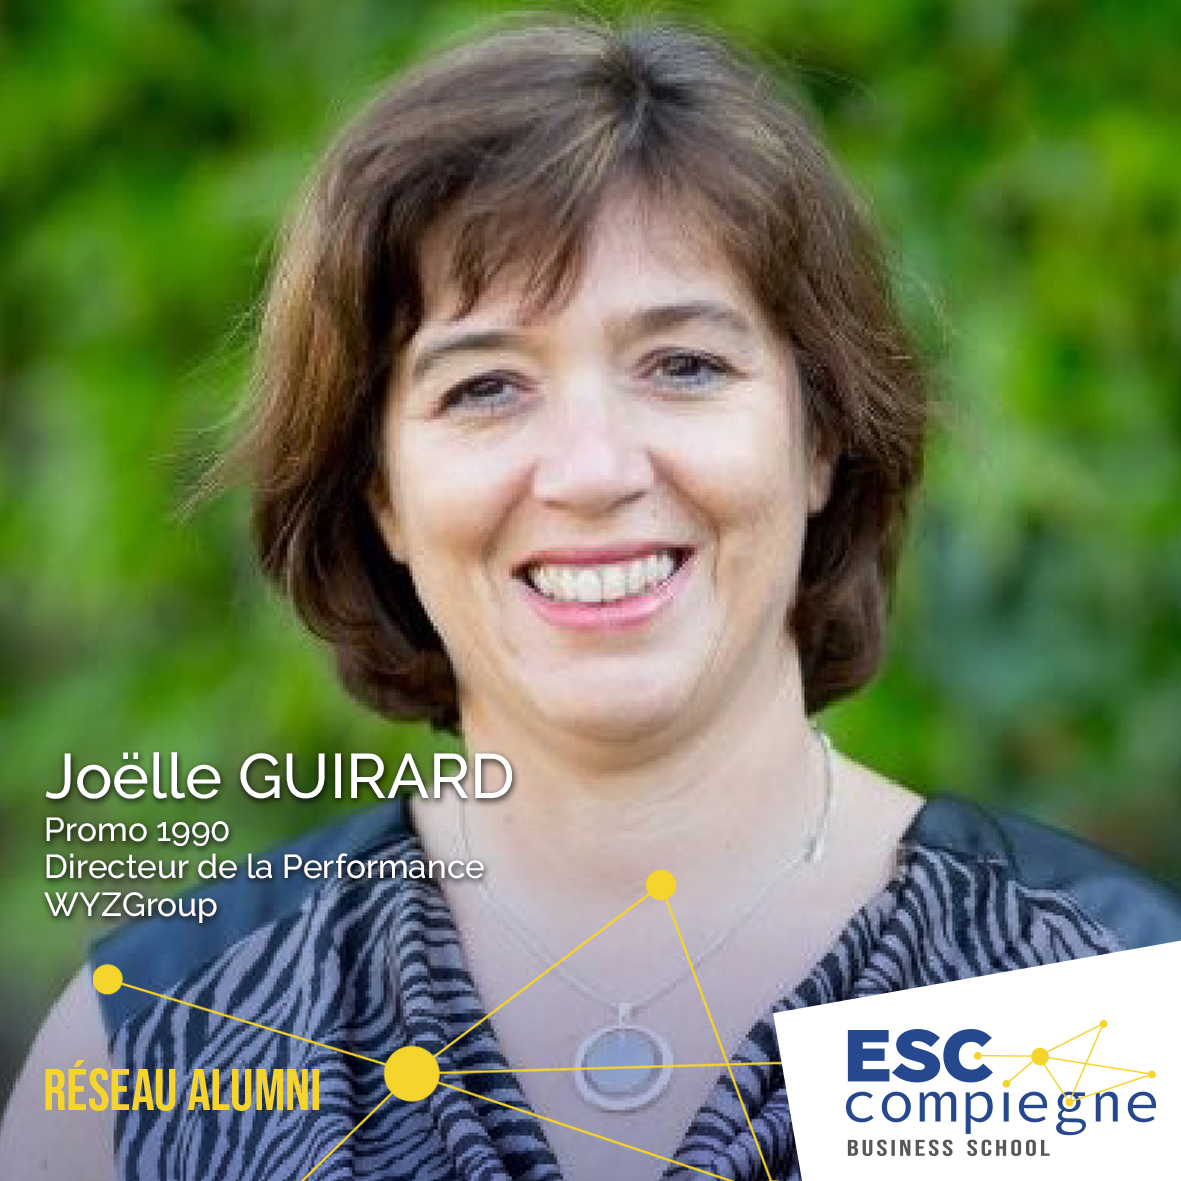 ESCC-Joelle-Guirard